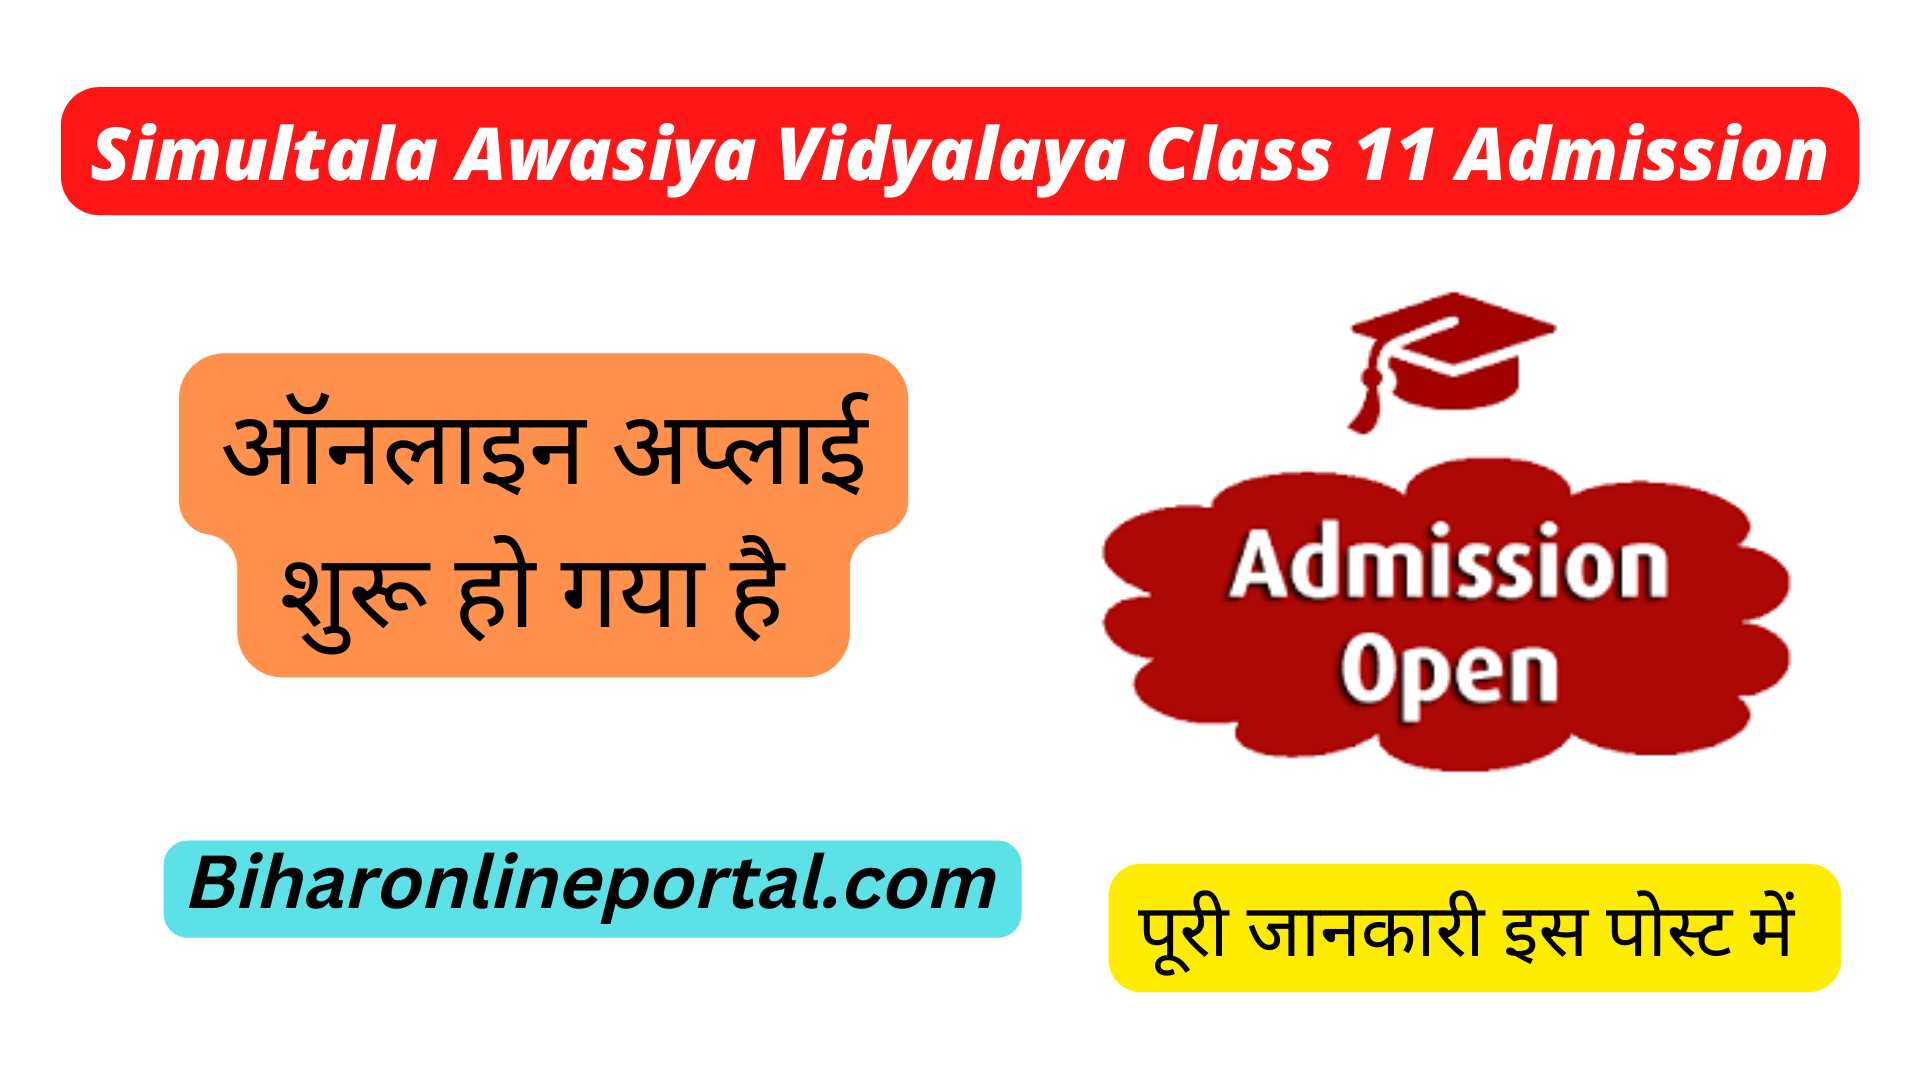 Simultala Awasiya Vidyalaya Class 11 Admission